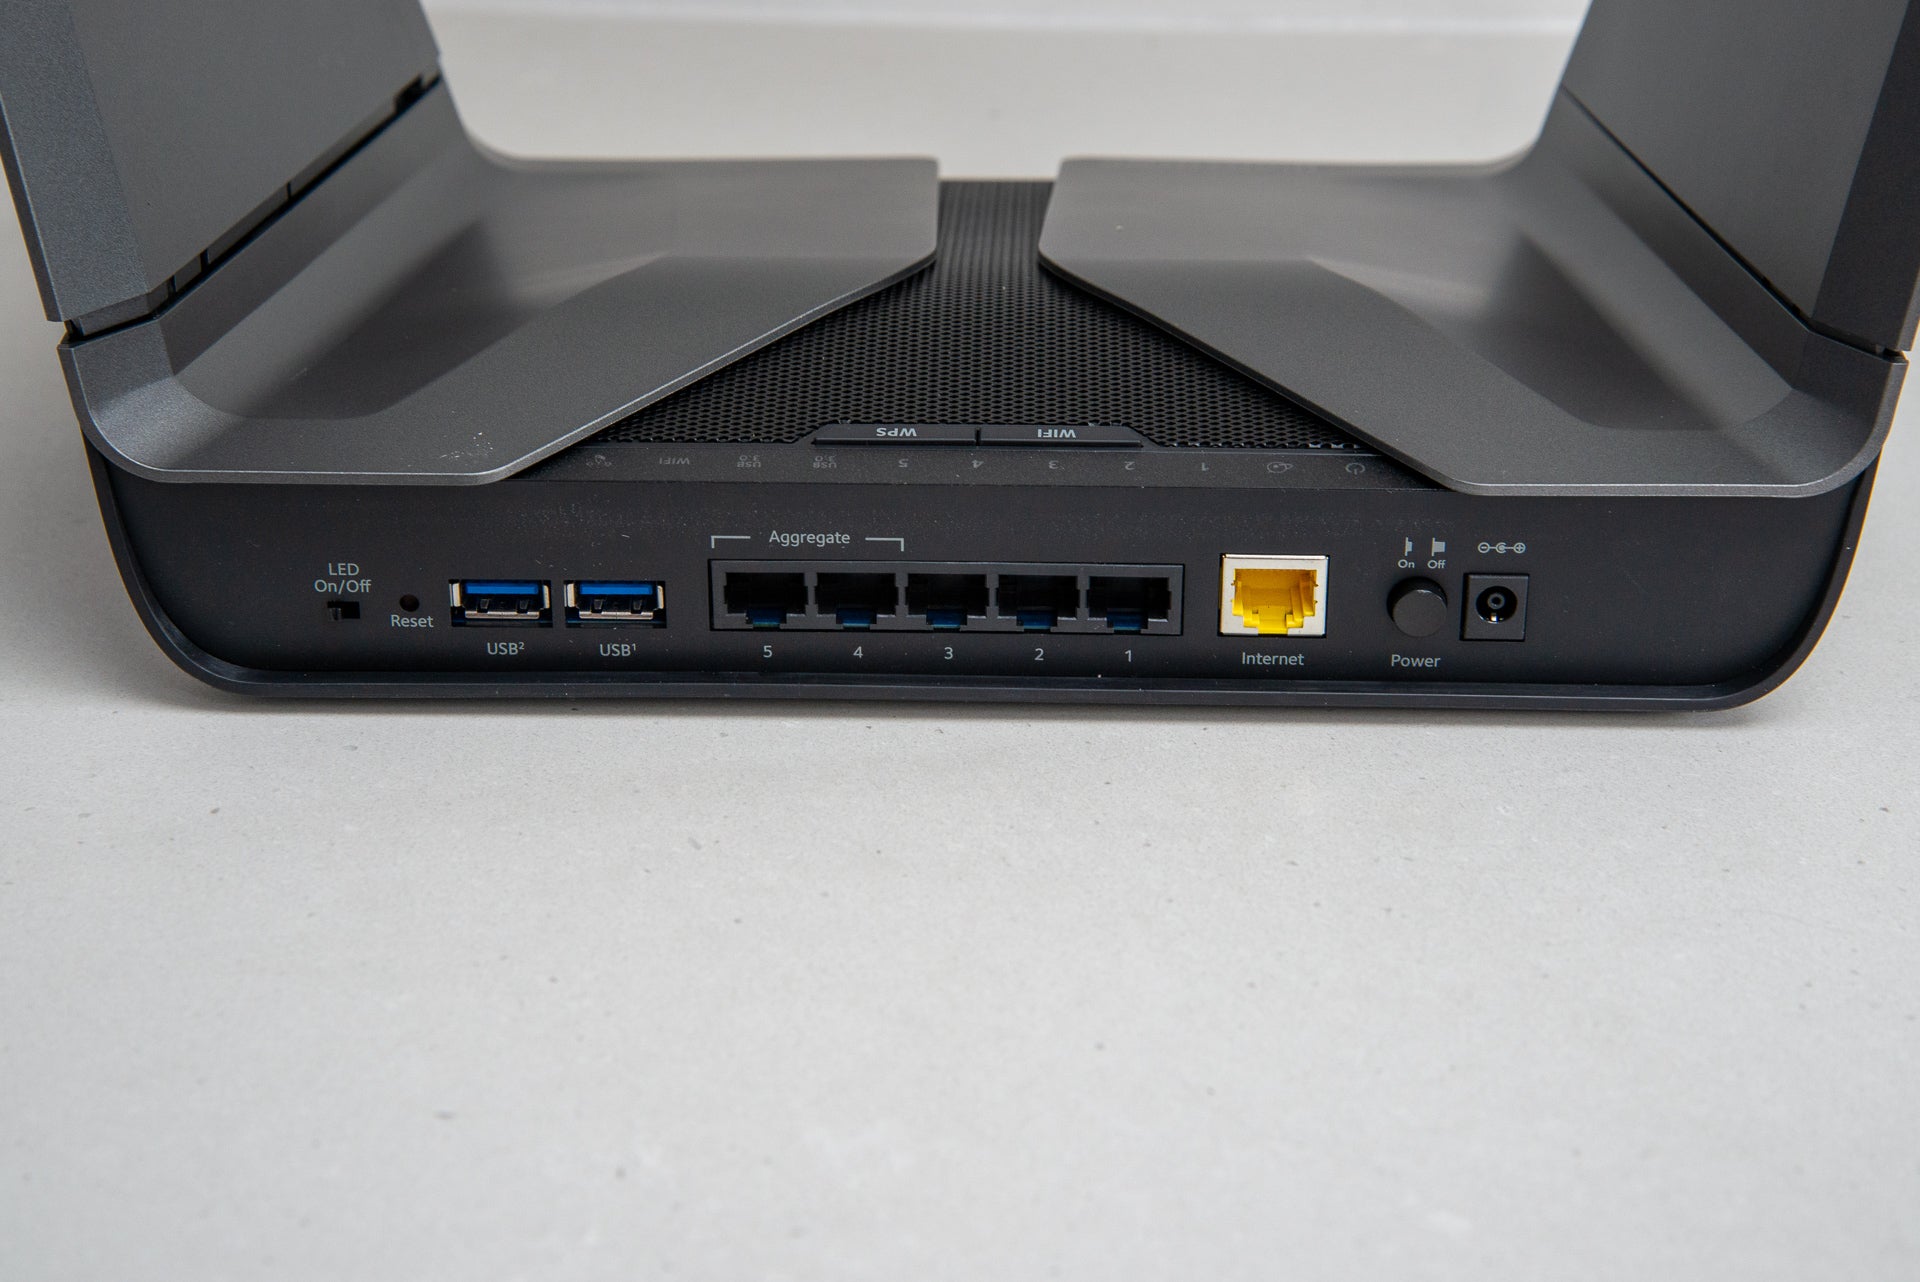 Netgear Nighthawk AX8 Ethernet and USB ports